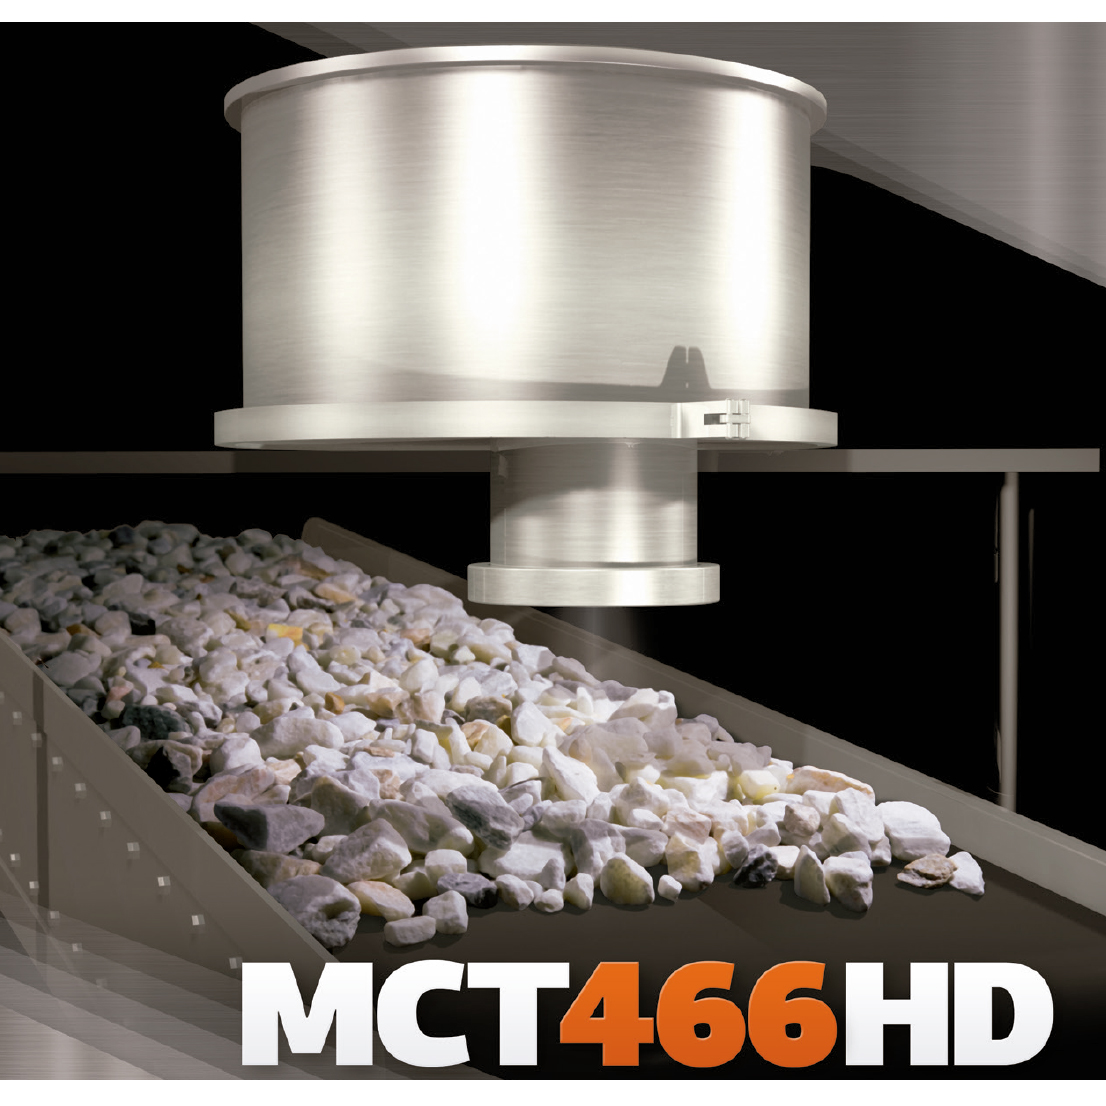 MCT466-HD | Analizador de humedad para trabajo pesado - Infrarrojo (NIR)